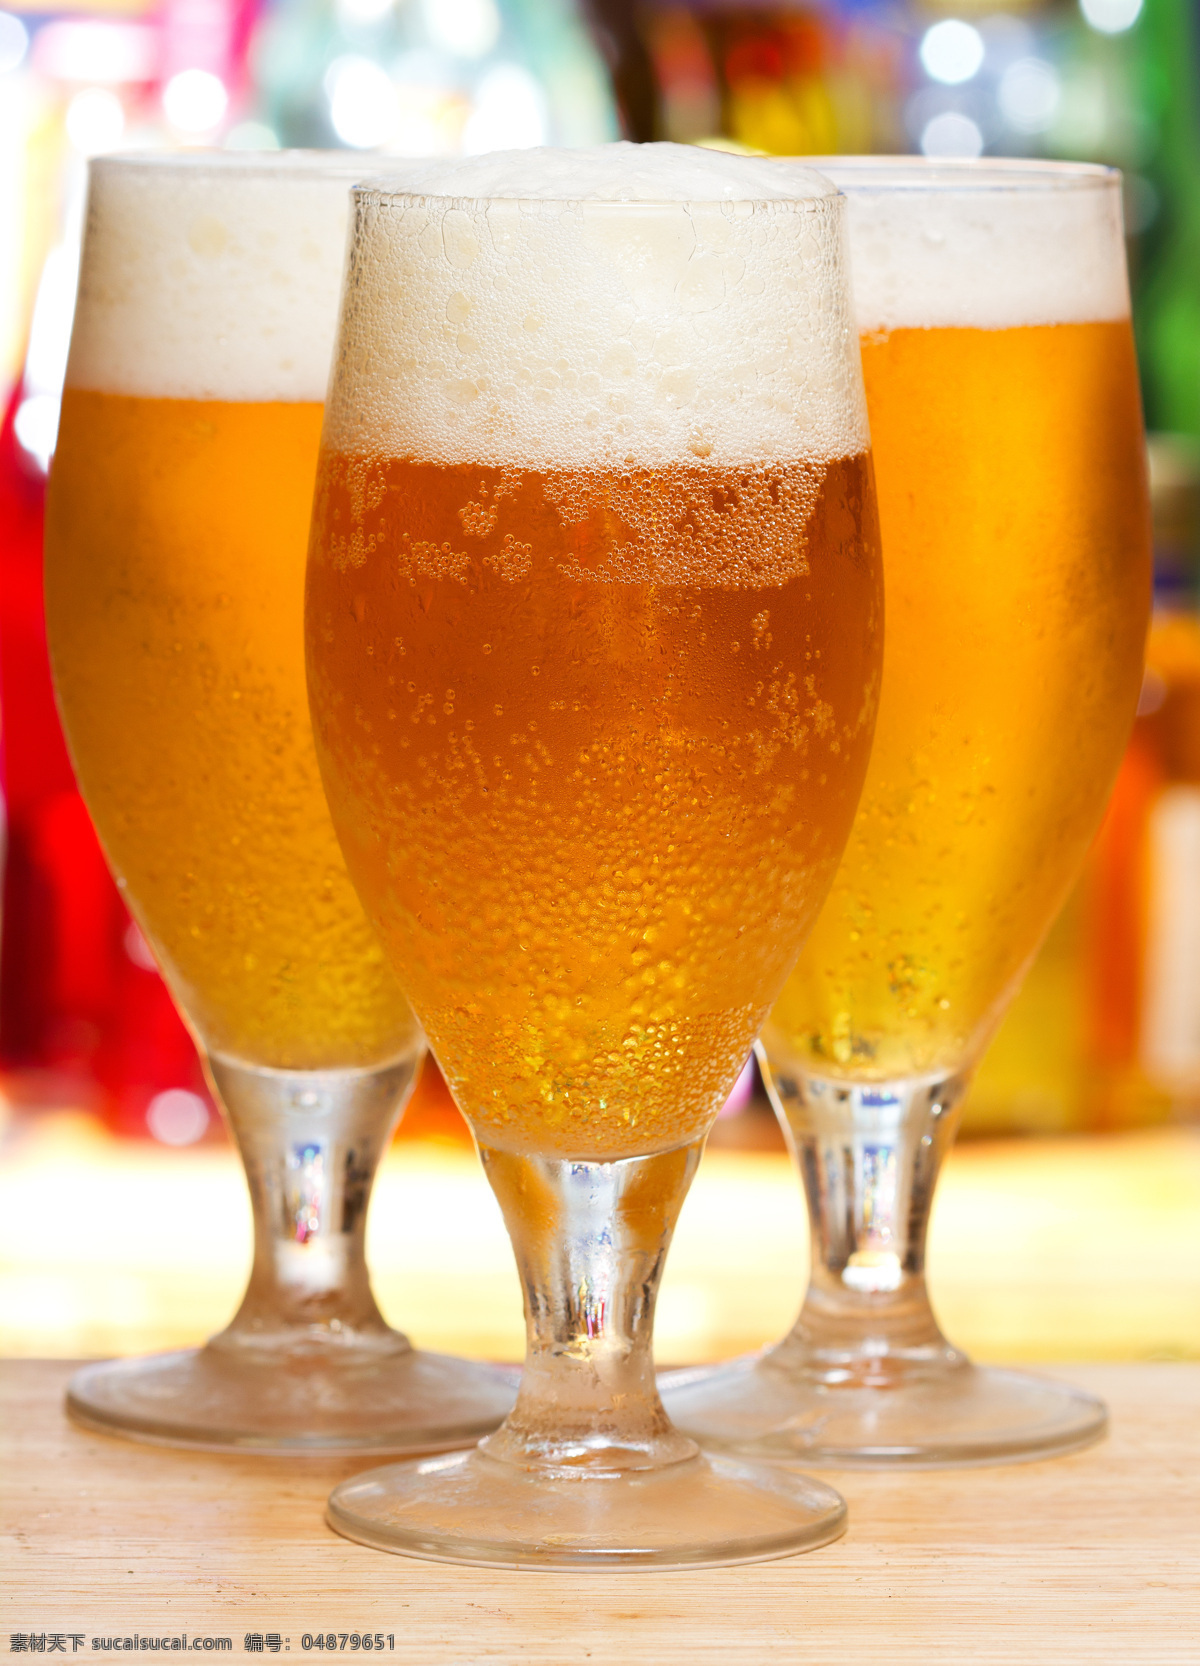 三杯啤酒 啤酒 啤酒杯子 啤酒酒杯 玻璃杯子 高脚杯 酒水饮料 餐饮美食 白色